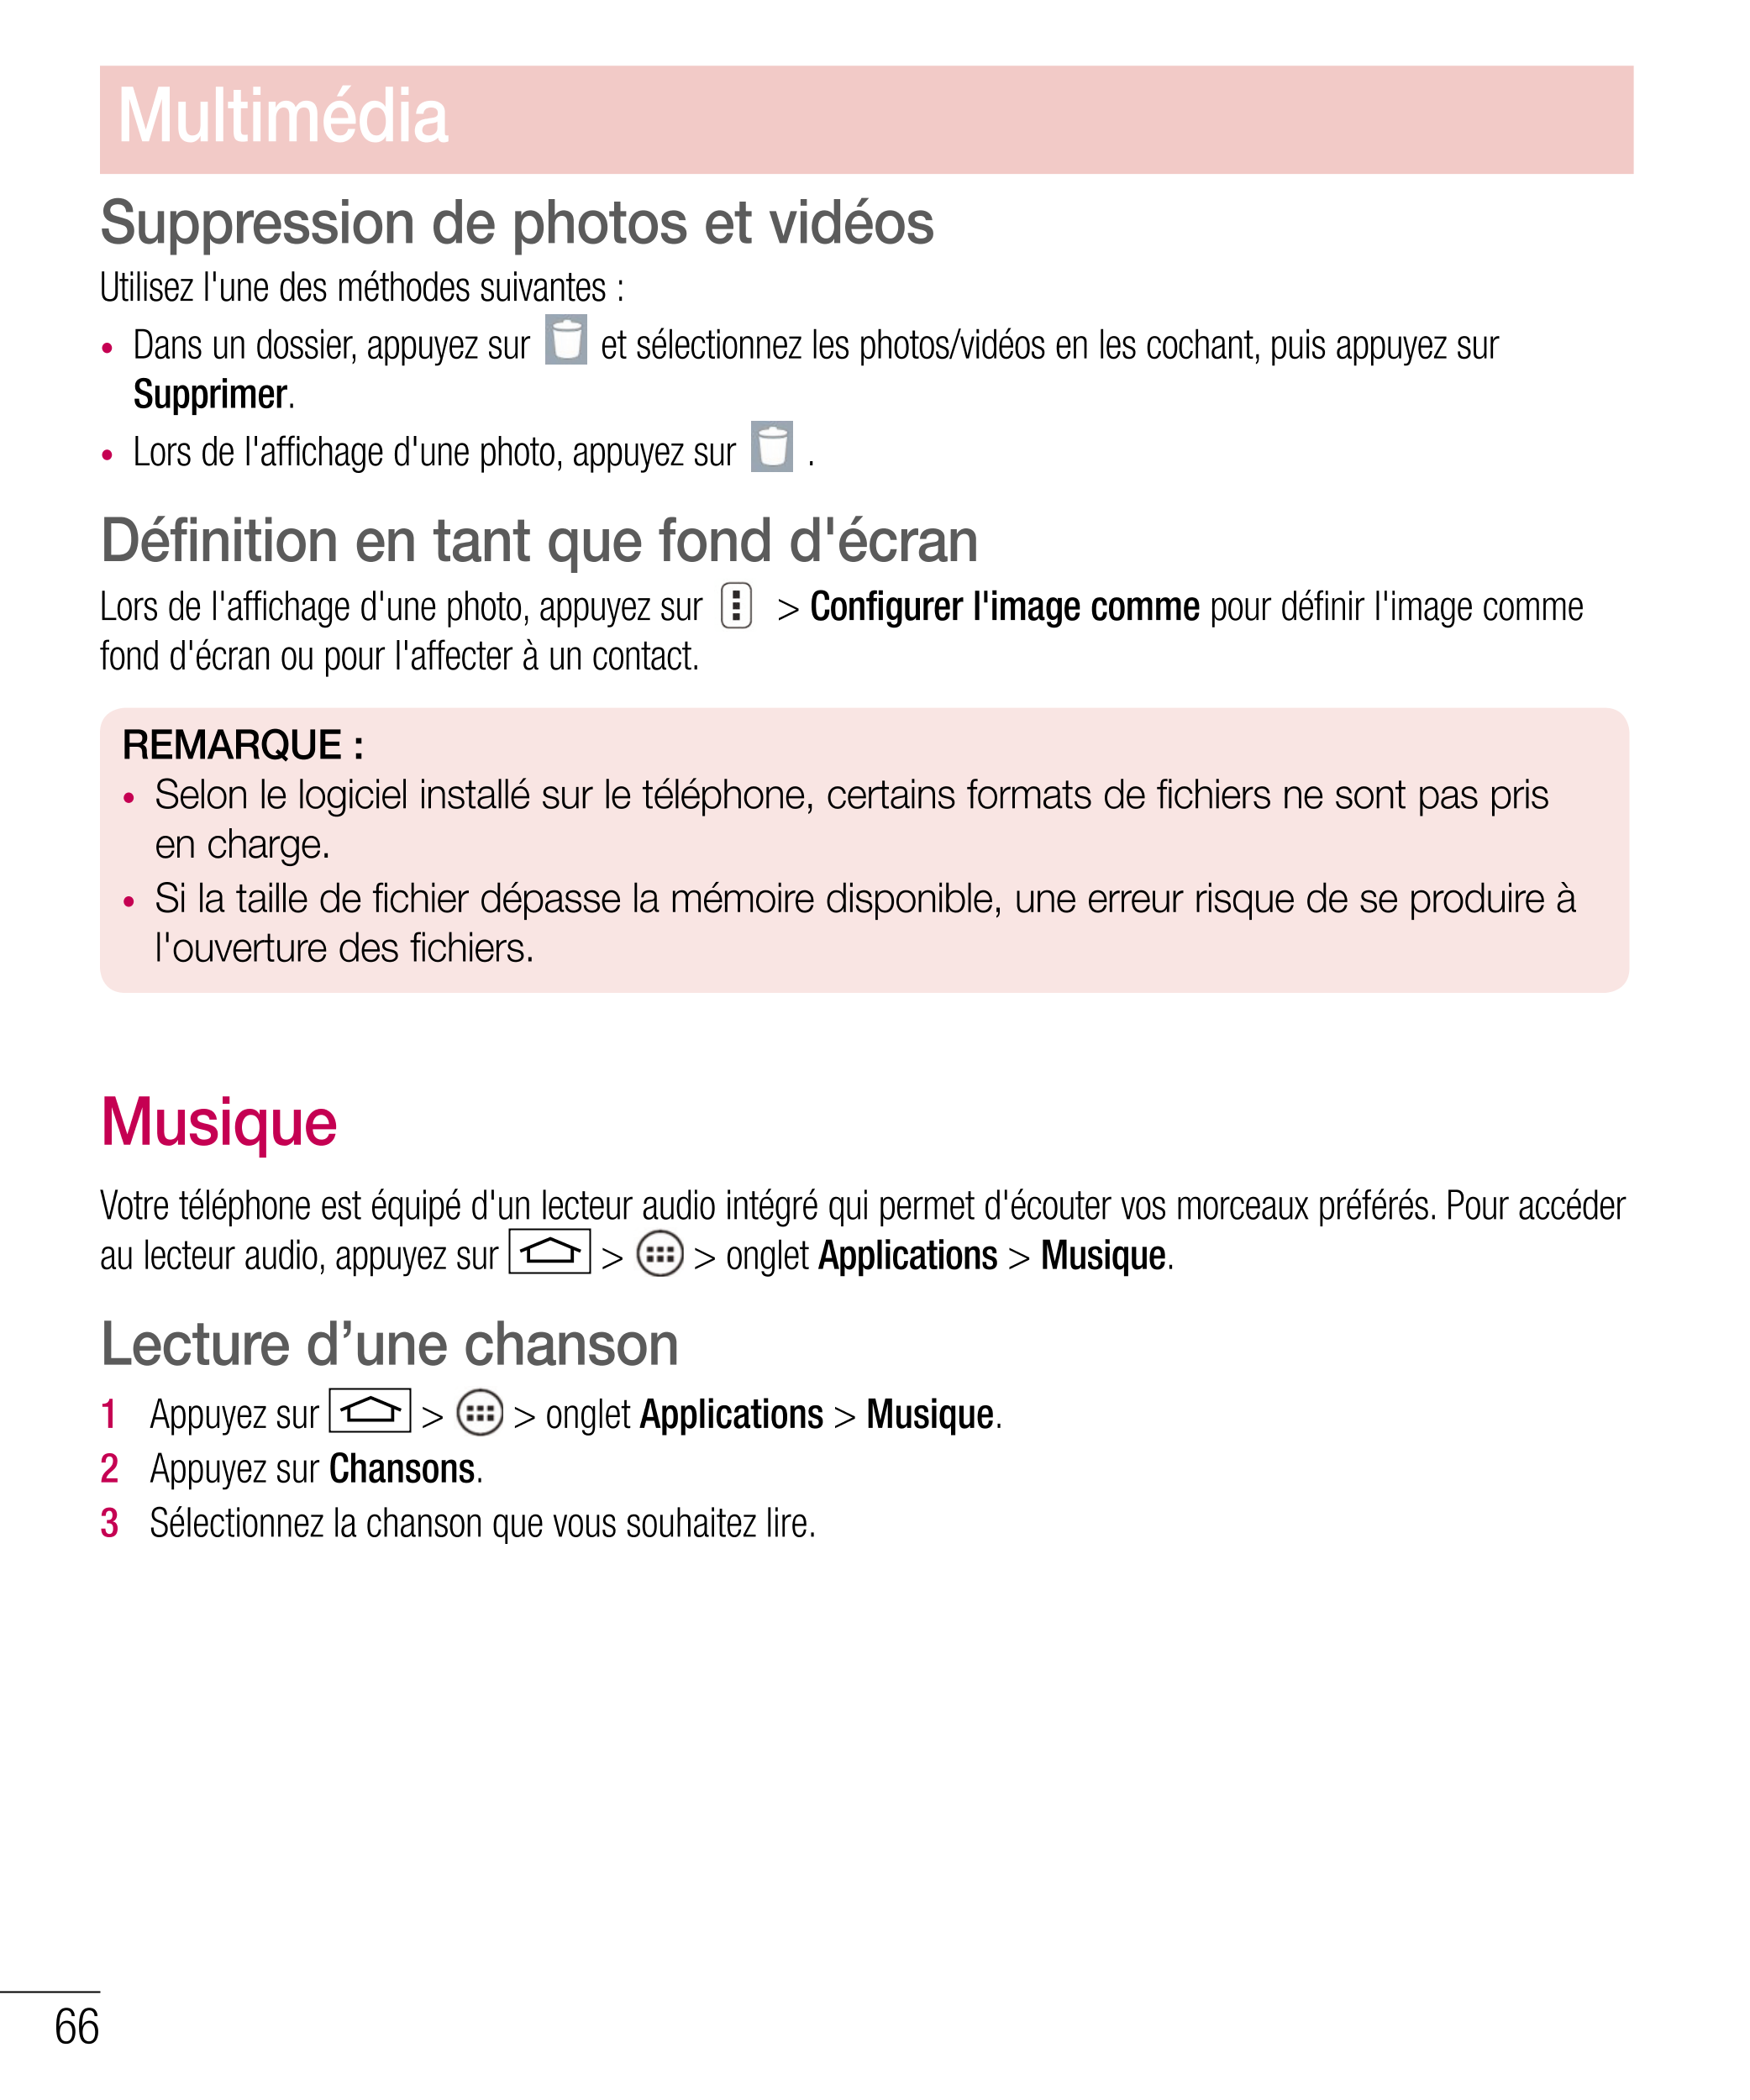 Multimédia
Suppression de photos et vidéos
Utilisez l'une des méthodes suivantes :
•  Dans un dossier, appuyez sur  et sélection